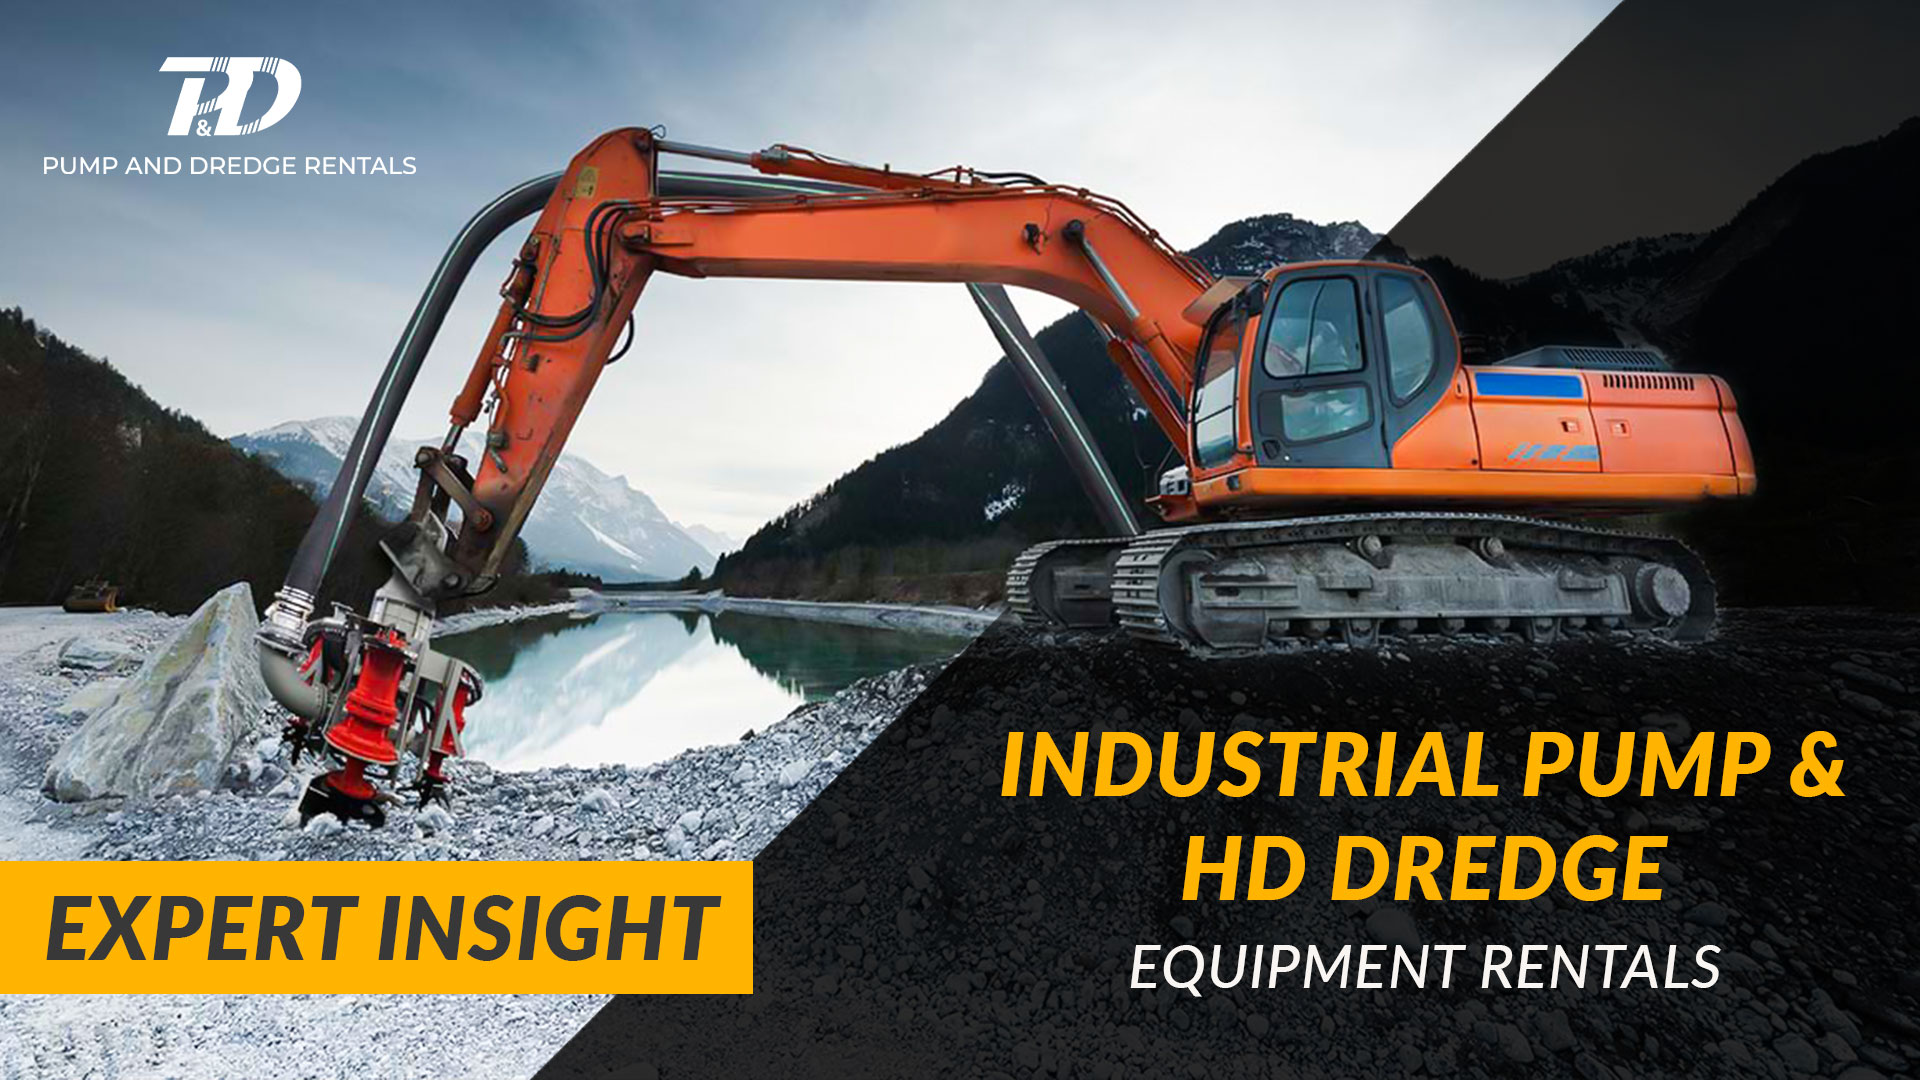 Industrial Pump & HD Dredge Equipment Rentals